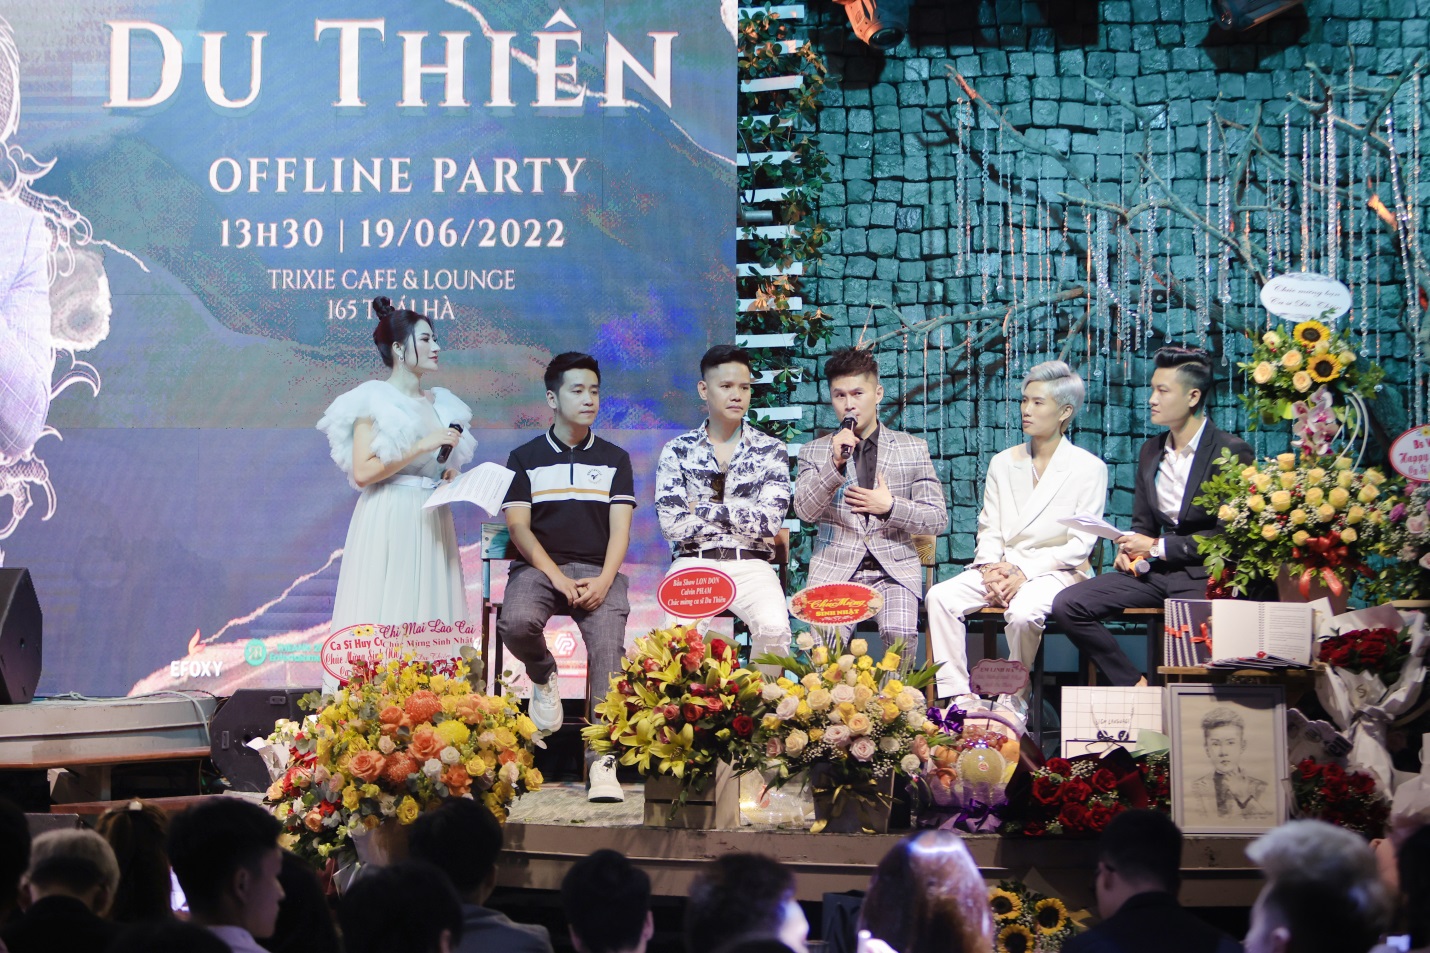 Ca sĩ Du Thiên tổ chức buổi offline chúc mừng sinh nhật và kỷ niệm 11 năm ca hát của mình